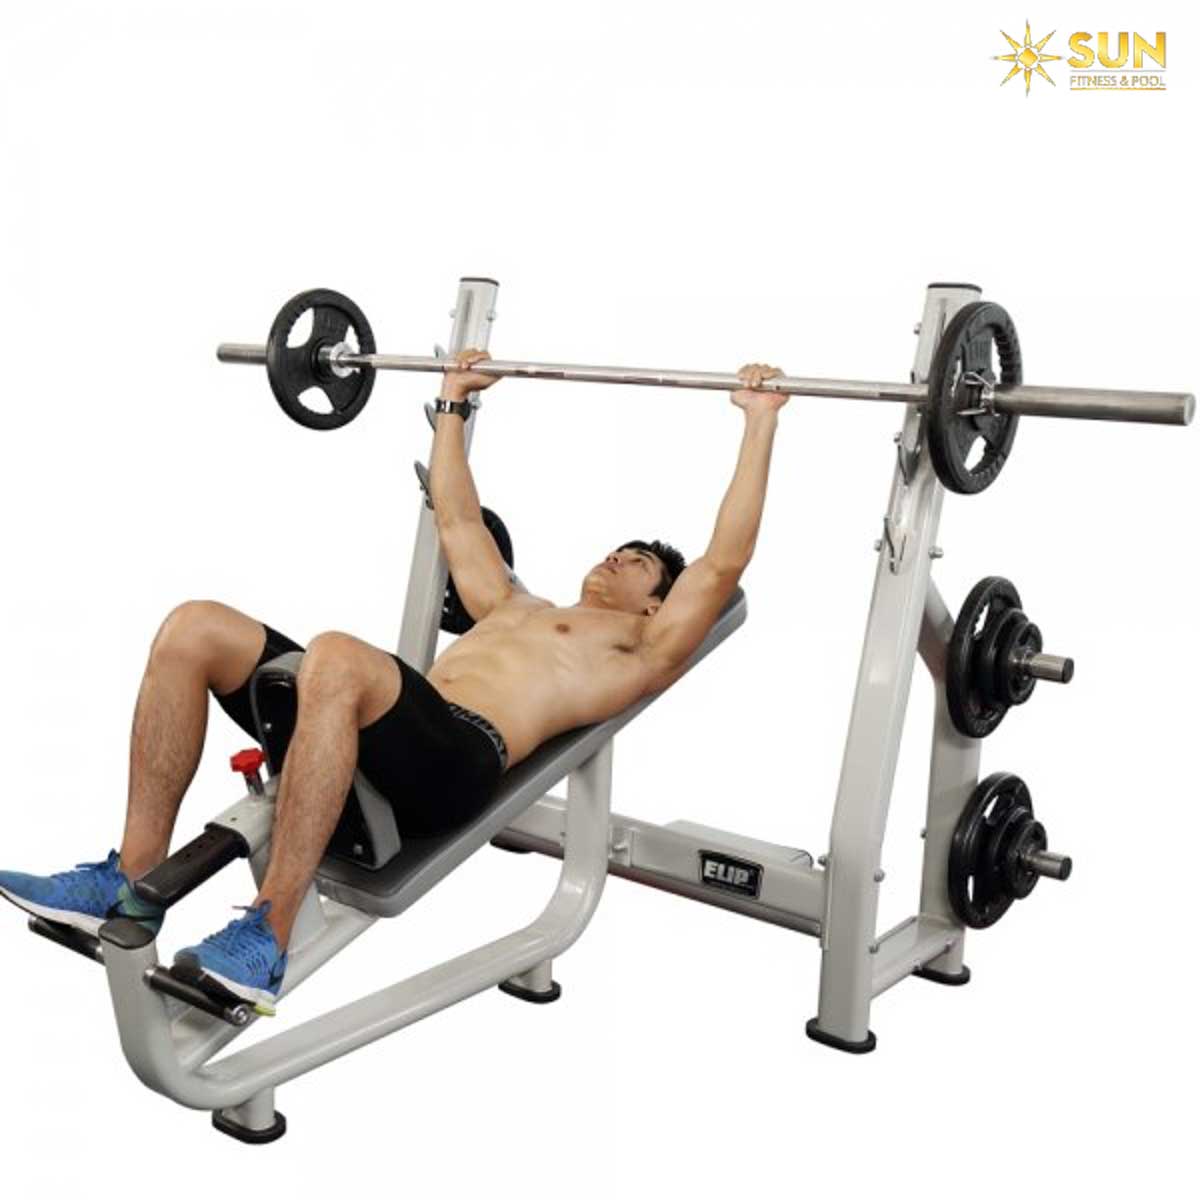 5 bài tập ngực tăng cơ cho nam hiệu quả - Sun Fitness & Pool